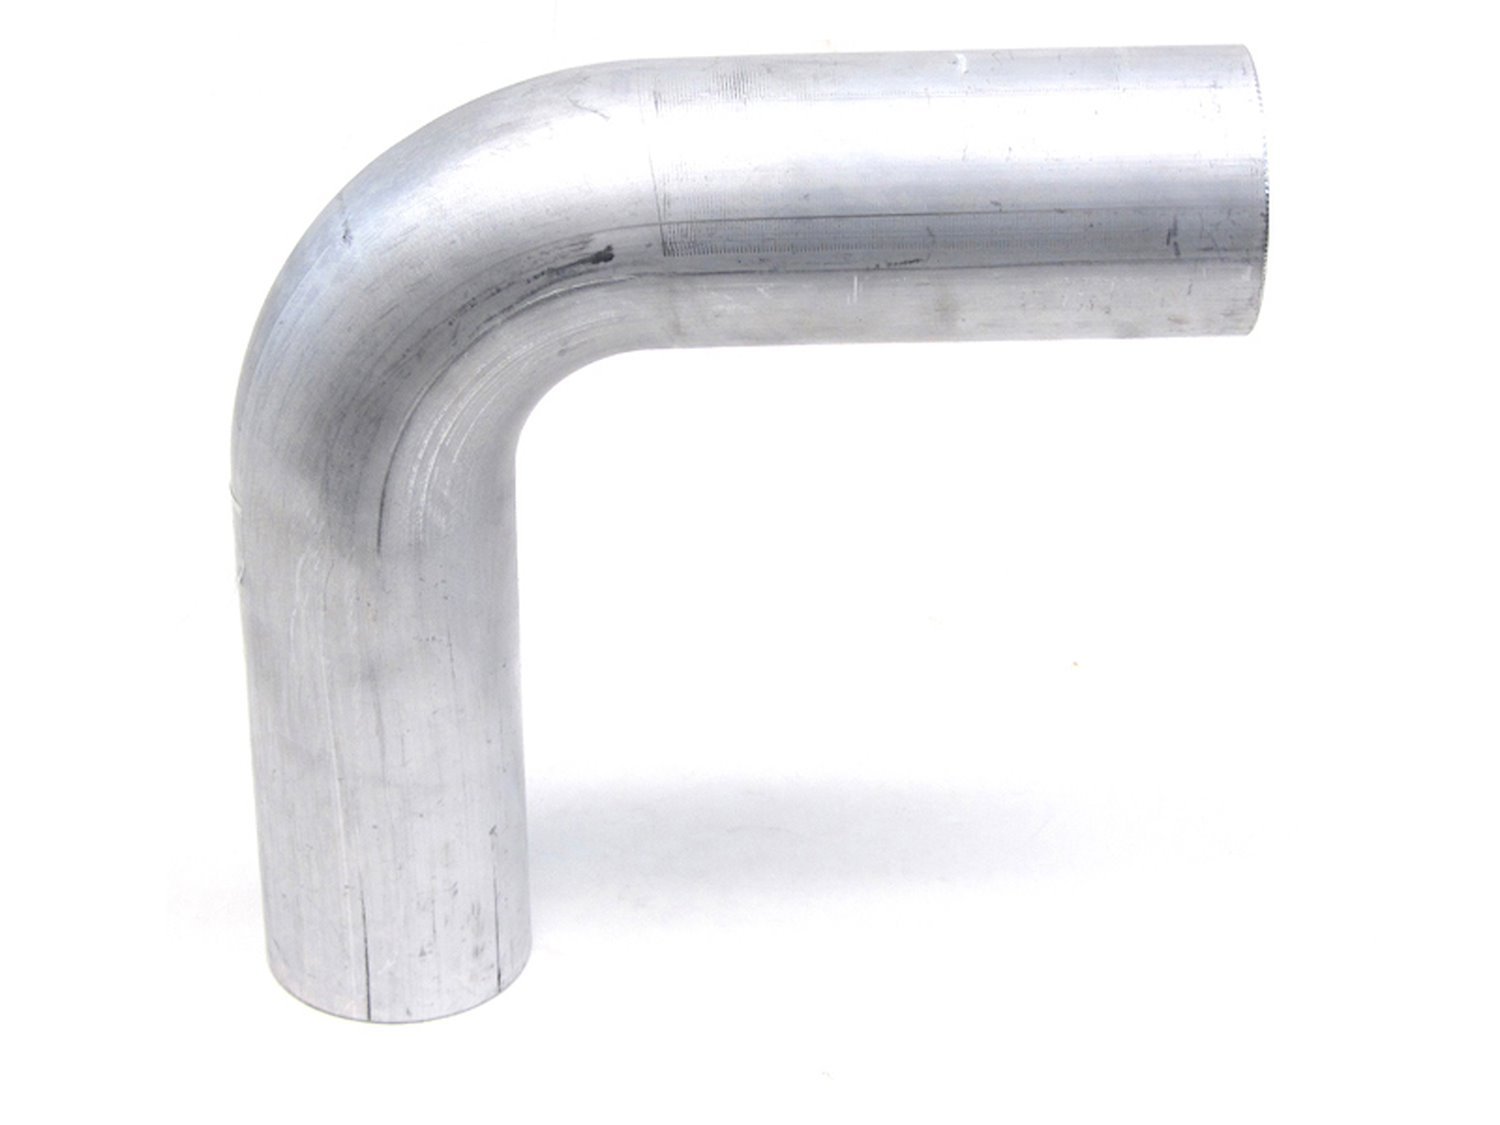 AT90-325-CLR-35 Aluminum Elbow Tube, 6061 Aluminum, 90-Degree Bend Elbow Tubing, 3-1/4 in. OD, Tight Radius, 3-1/2 in. CLR